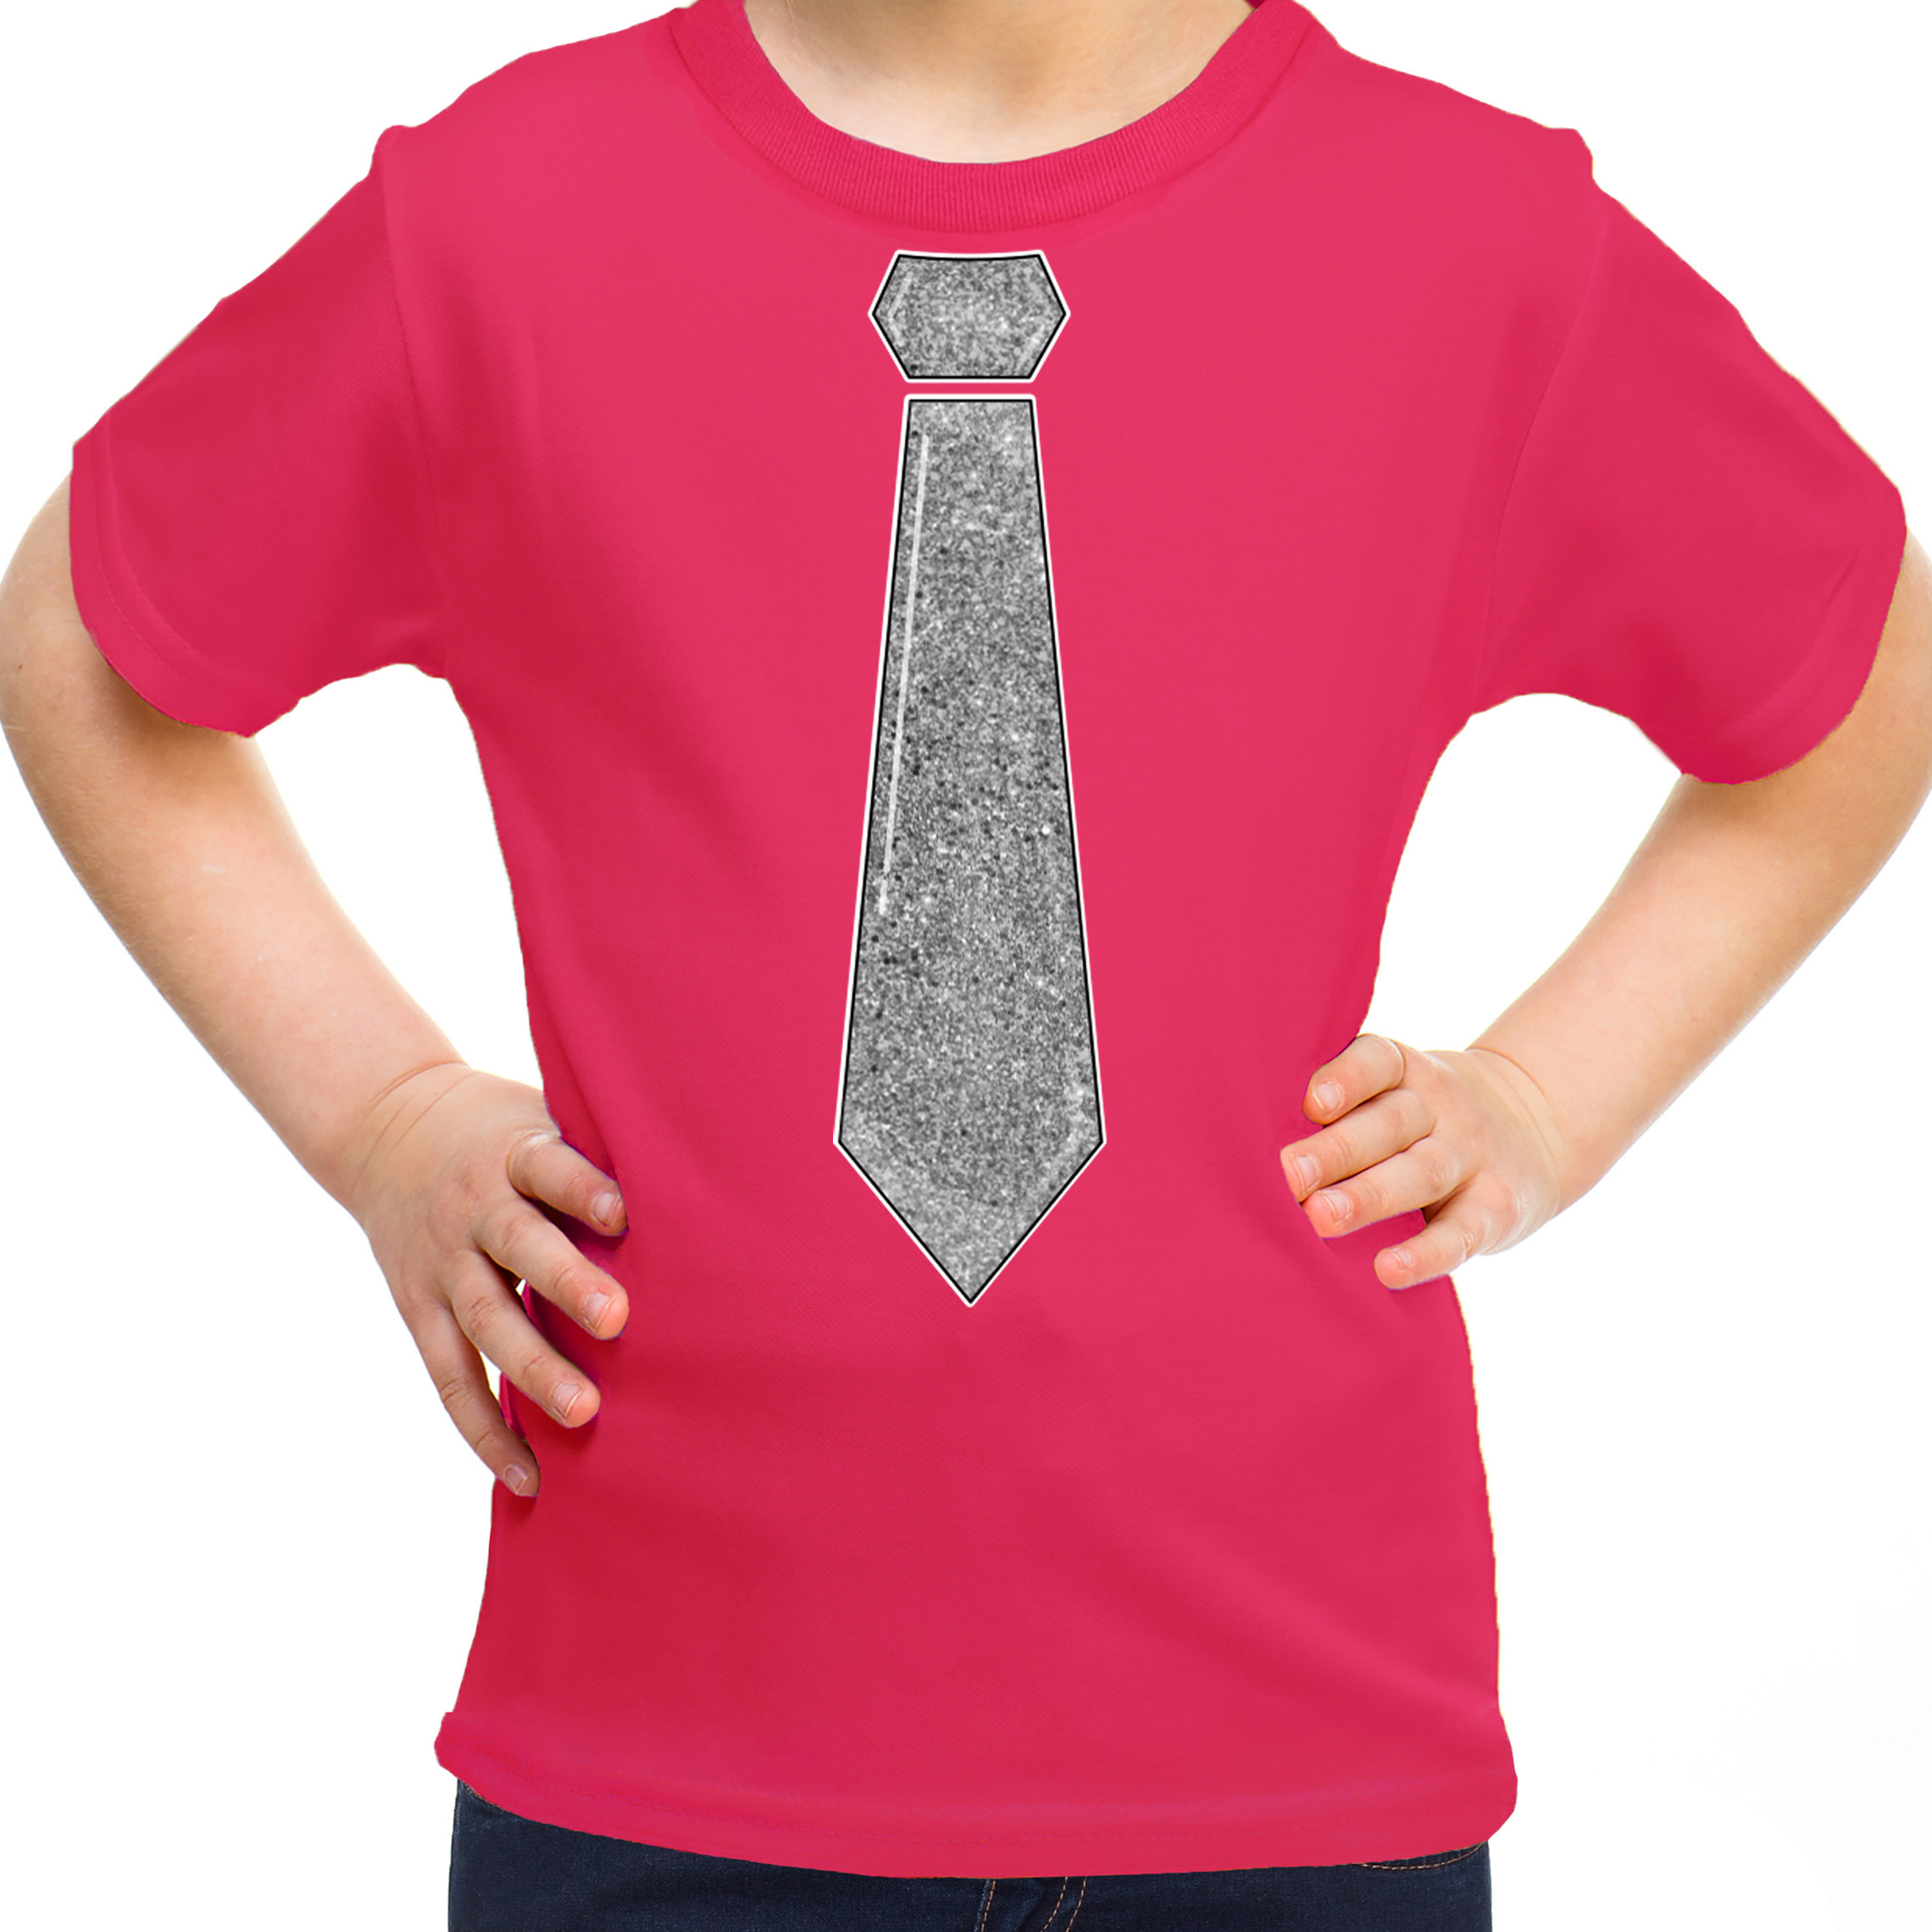 Verkleed t-shirt voor kinderen glitter stropdas roze meisje carnaval-themafeest kostuum